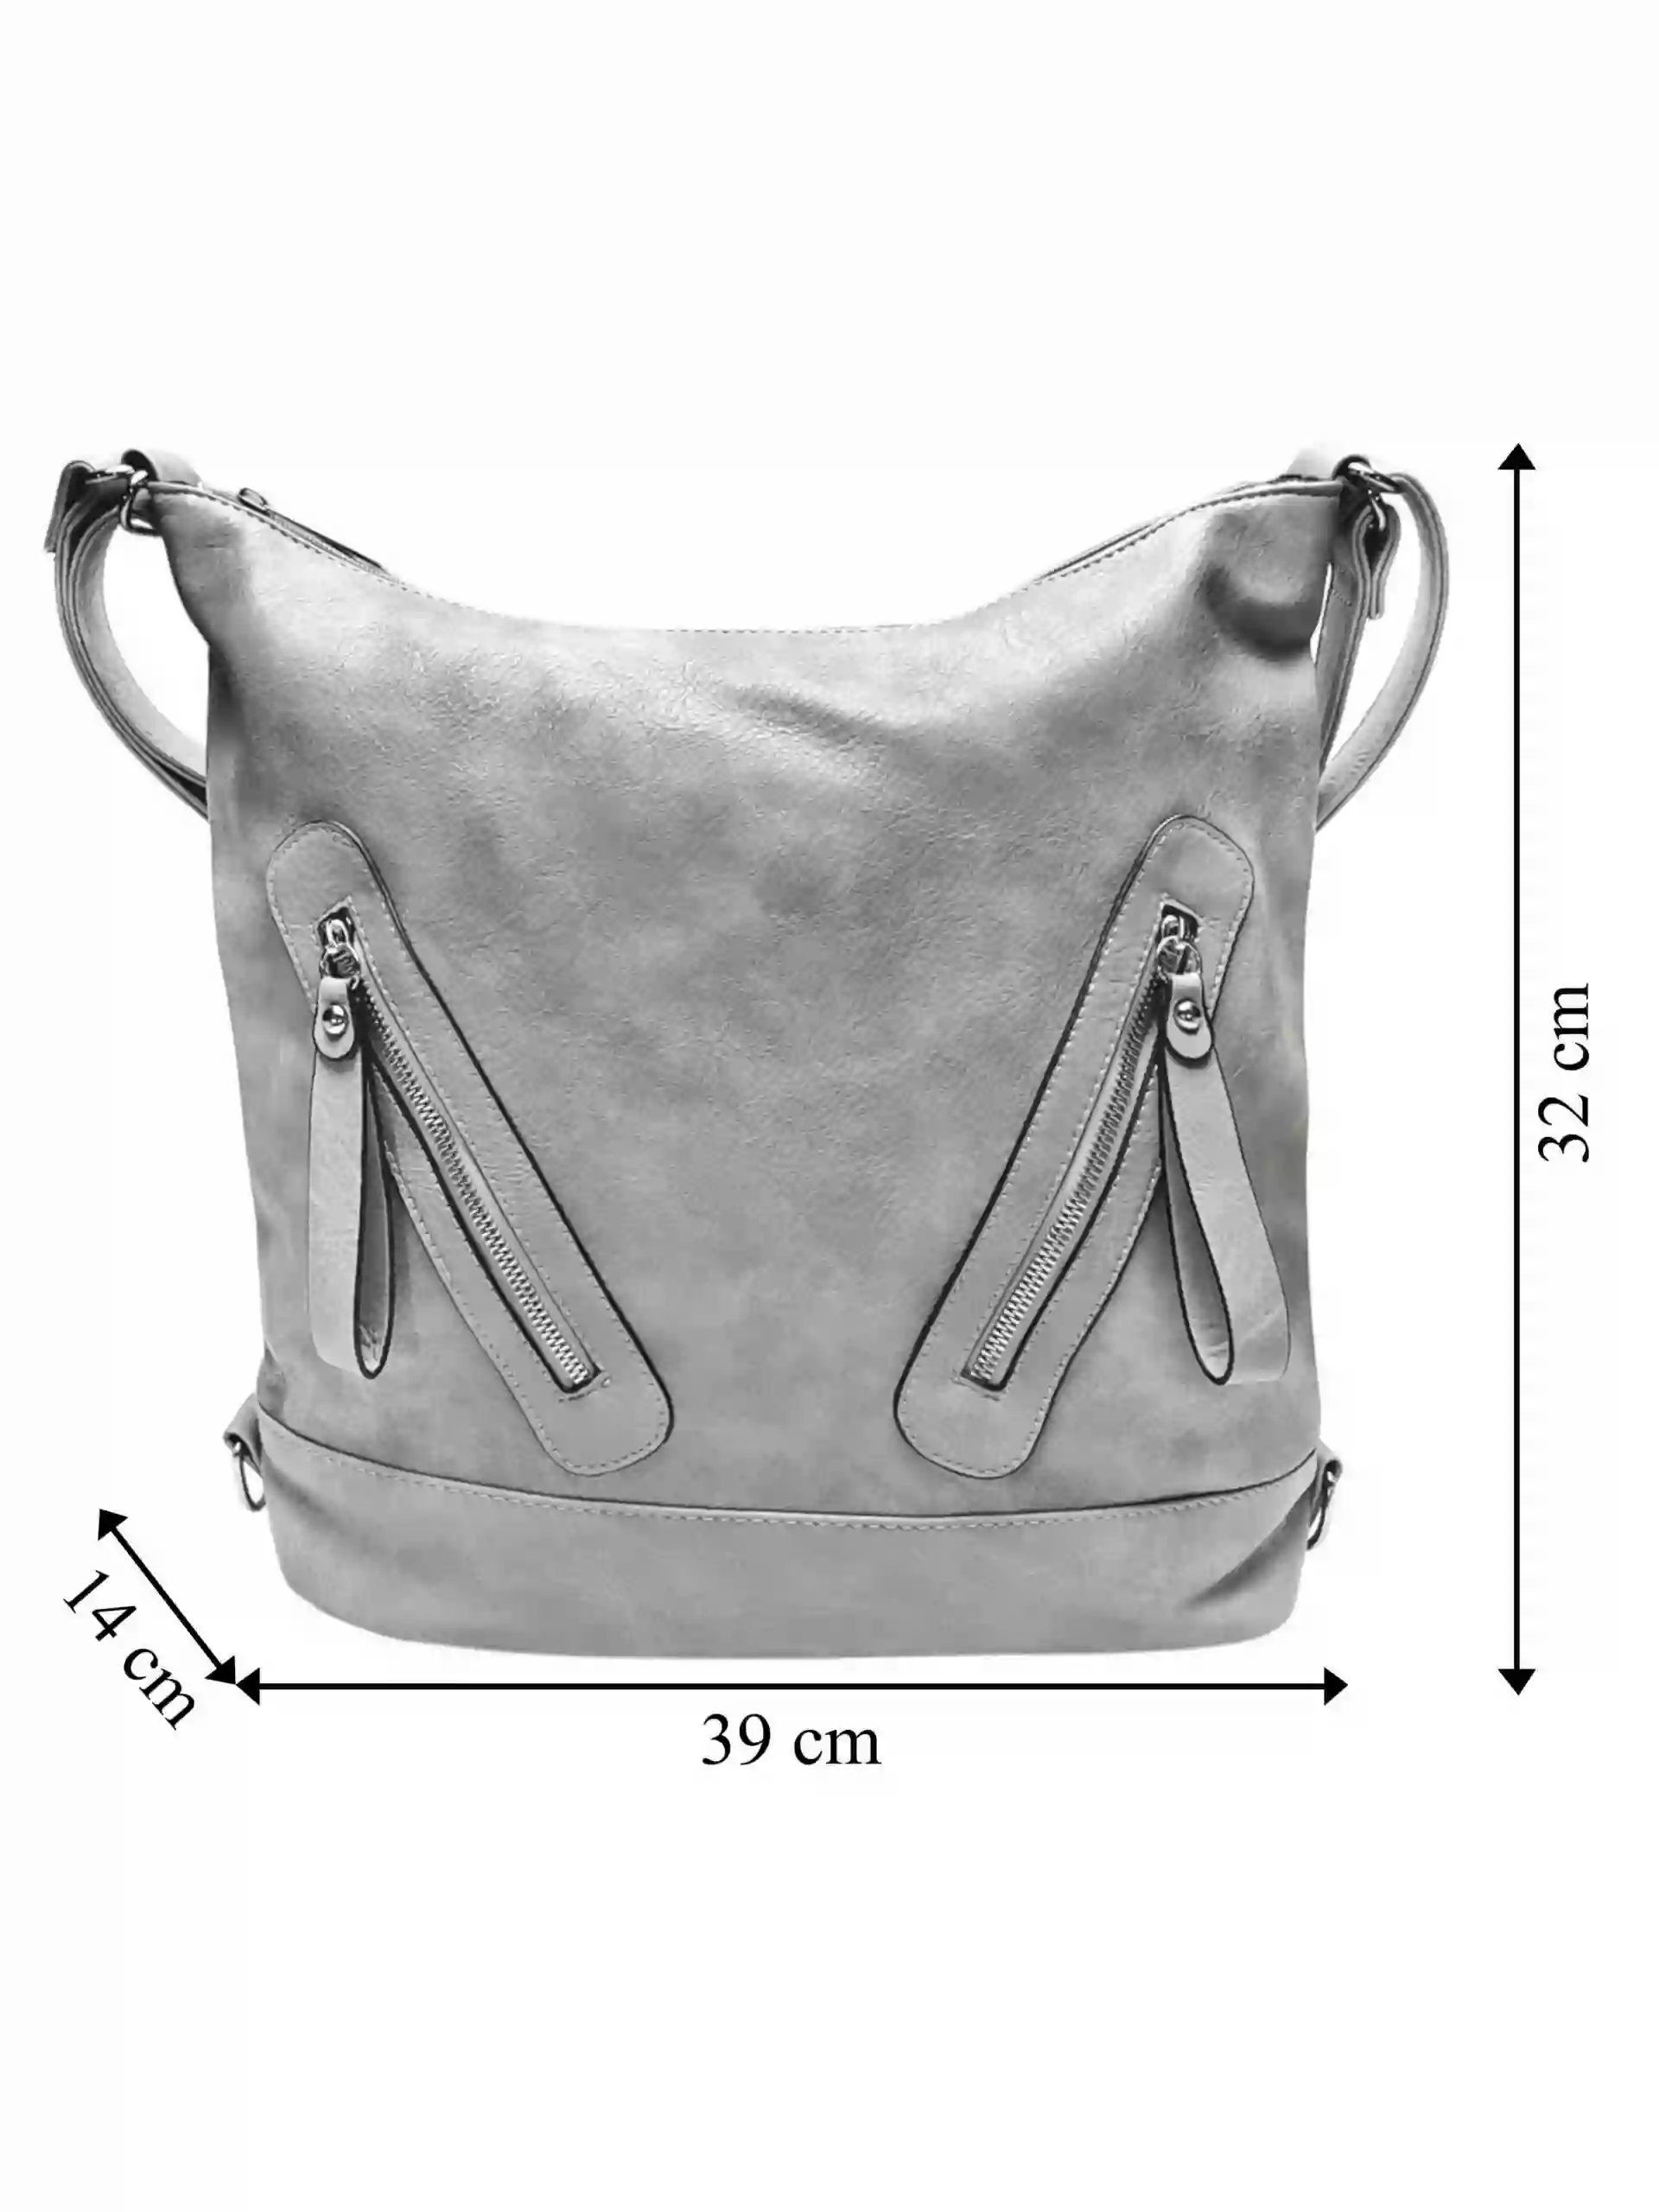 Velký světle šedý kabelko-batoh s kapsami, Tapple, H23906, přední strana kabelko-batohu s rozměry